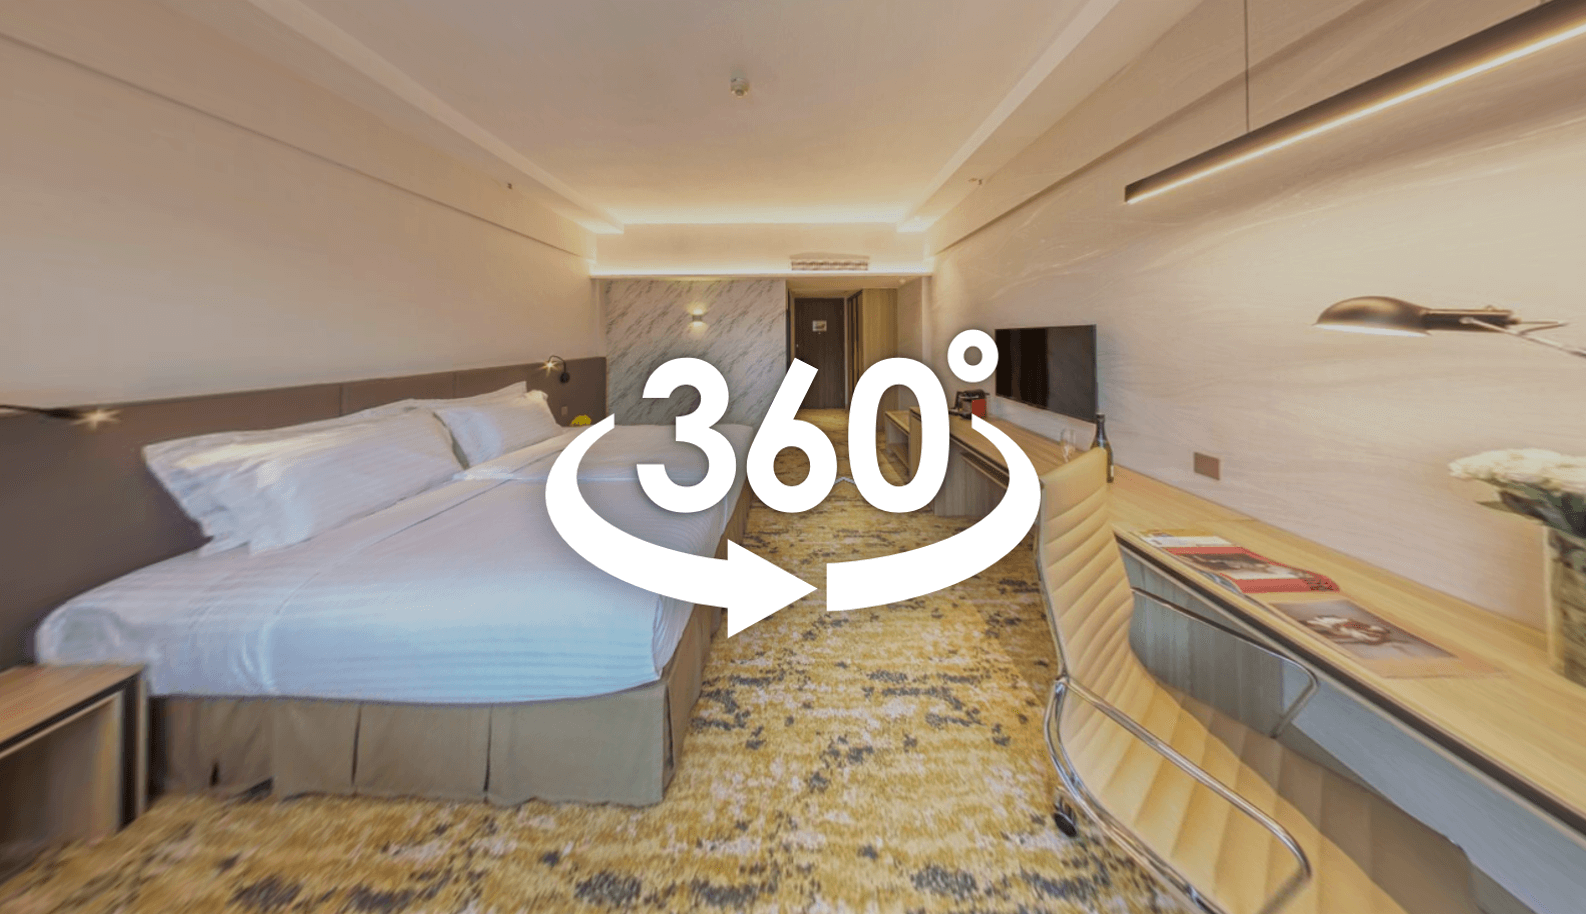 香港百樂酒店360°虛擬實景